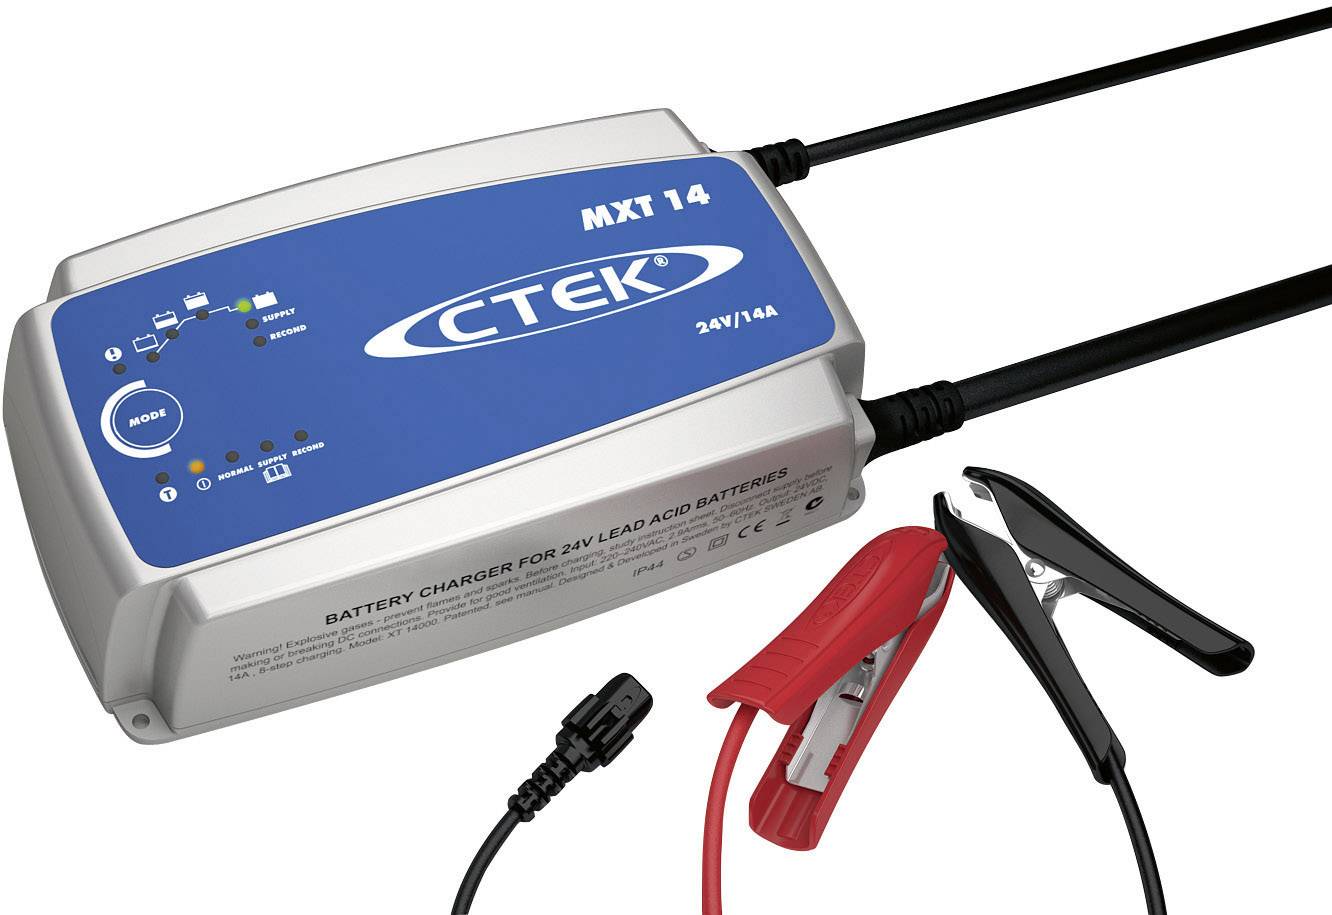 CTEK Multi XT 14 56-734 Automatikladegerät 24 V 14 A